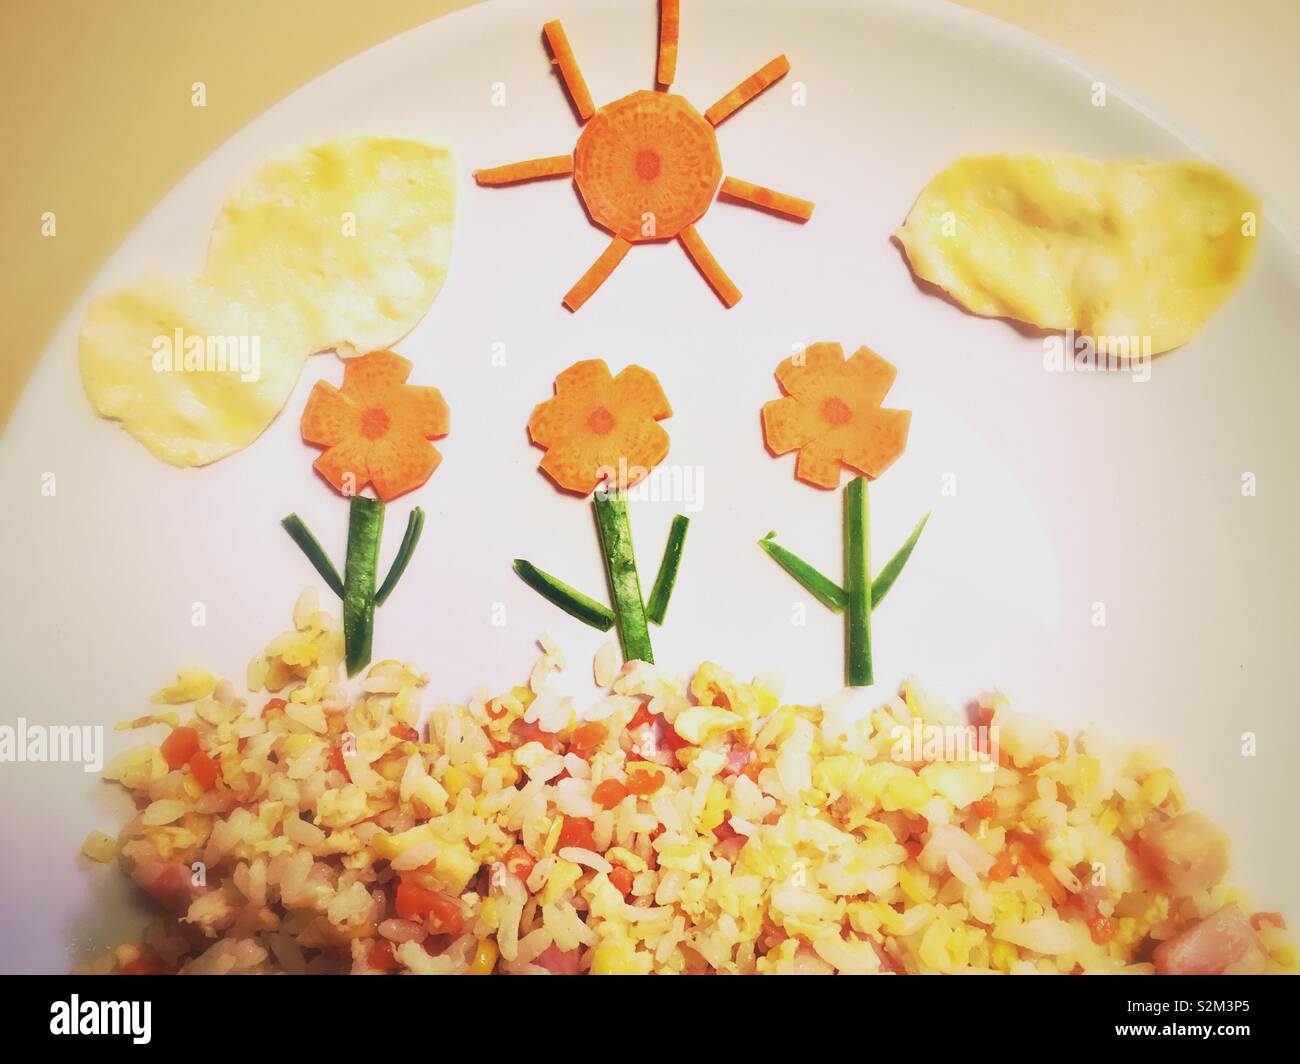 Eine Nahaufnahme Bild einer Mahlzeit mit Gemüse, Eier und Reis. Stockfoto